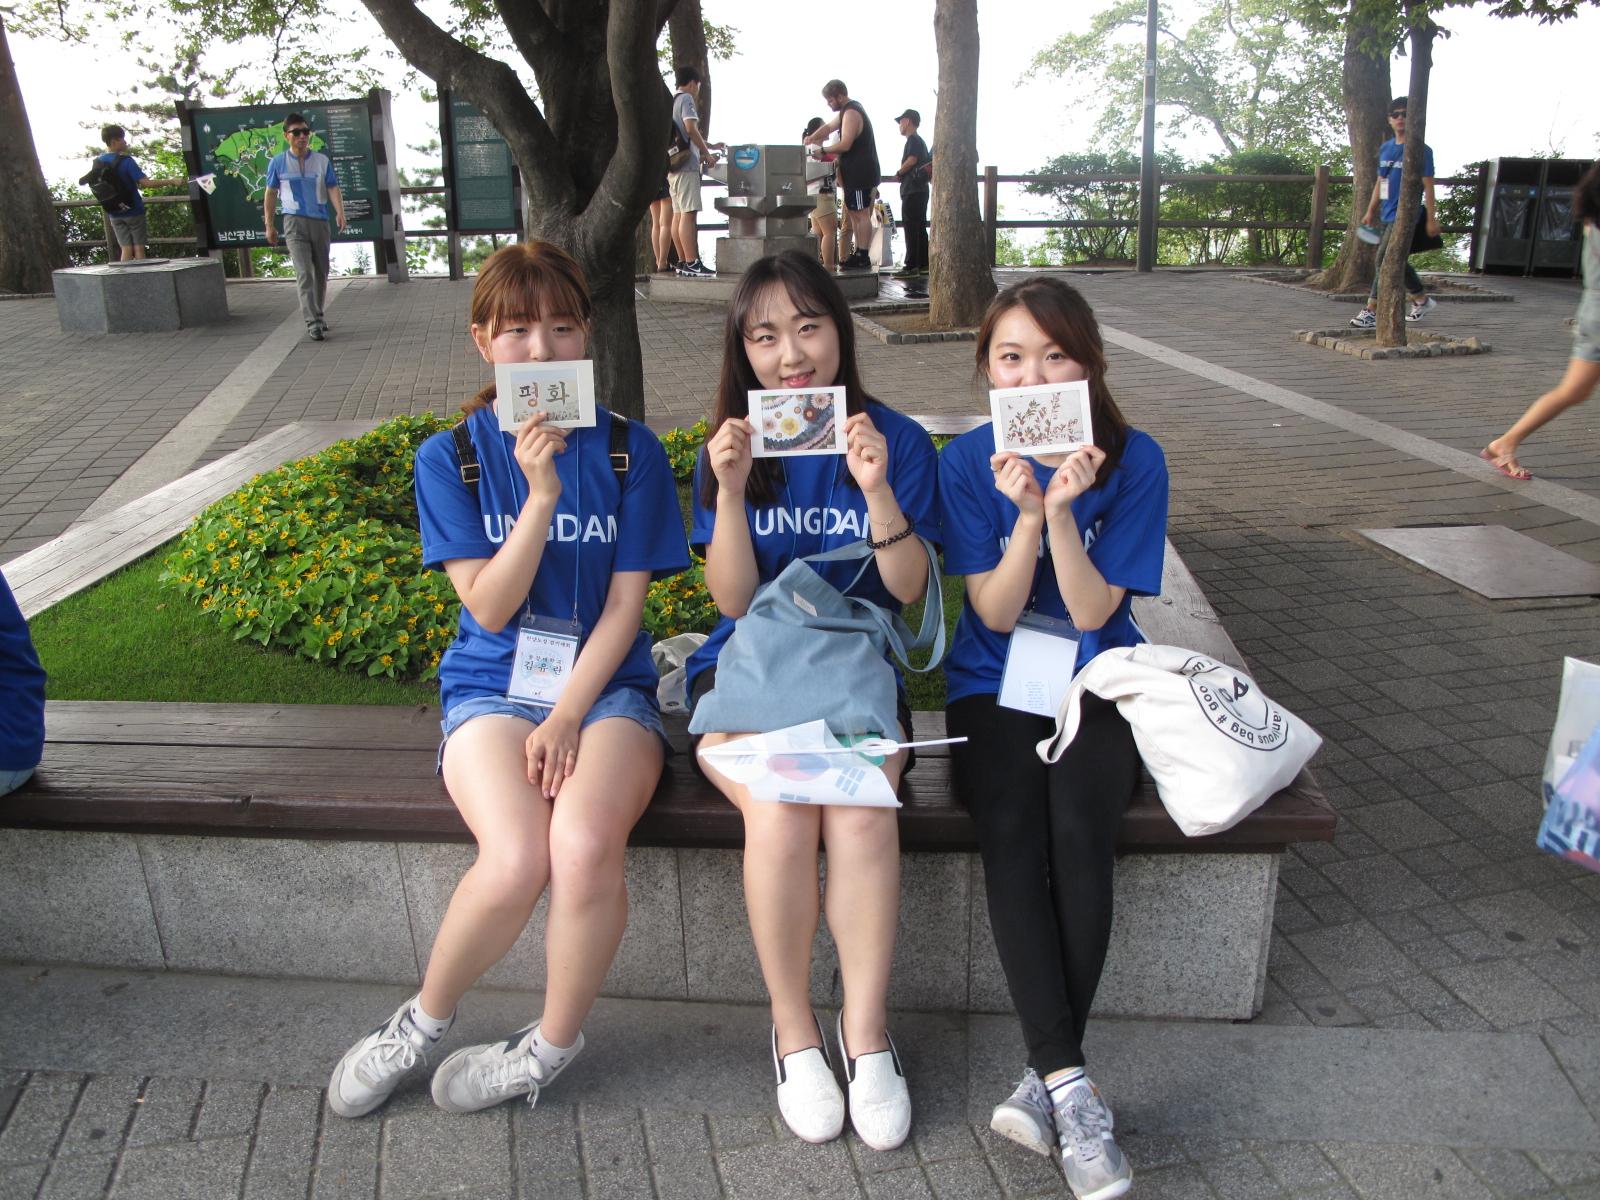 아산장학생은 나눔문화 확산을 위해 8.13일과 14일 한양도성 걷기 행사를 개최했습니다.1